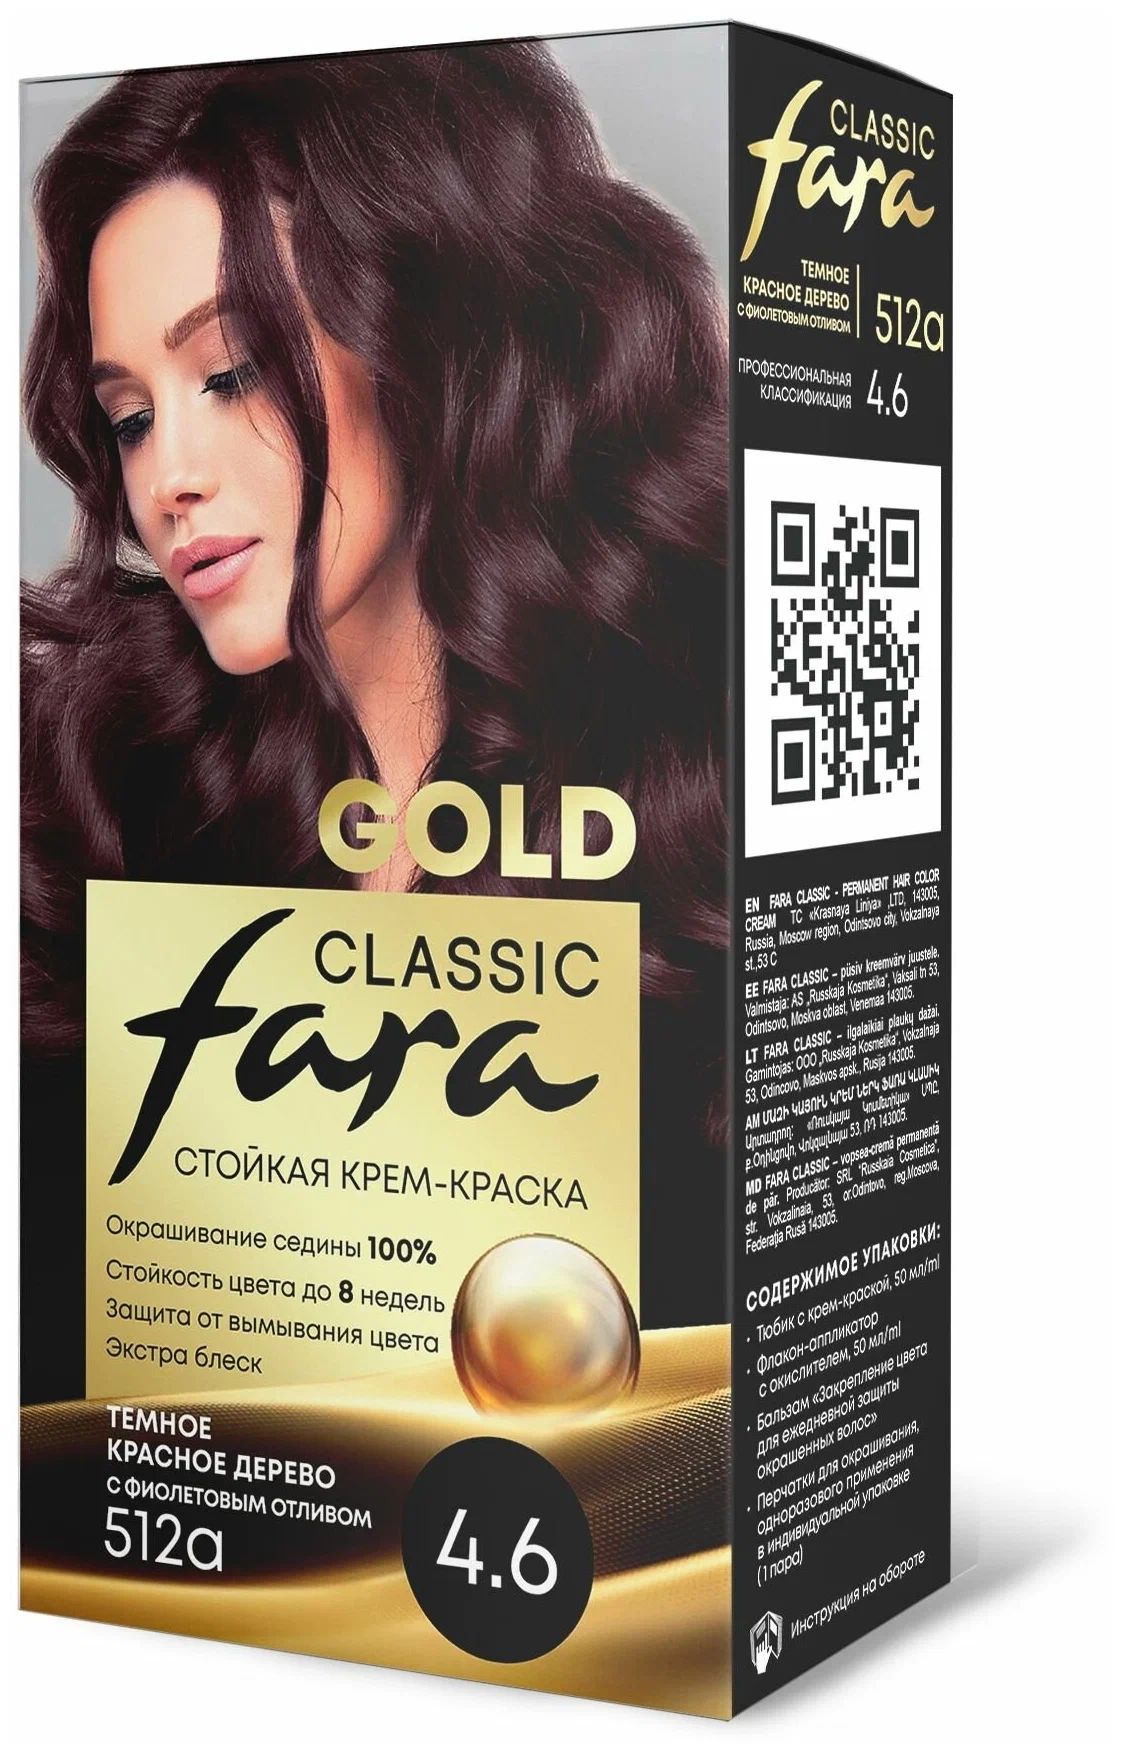 Крем-краска для волос Fara Classic Gold 512А красное дерево 4.6, 140 г 3d hydra lipgloss limited edition 3д увлажняющий блеск для губ лимитированная коллекция